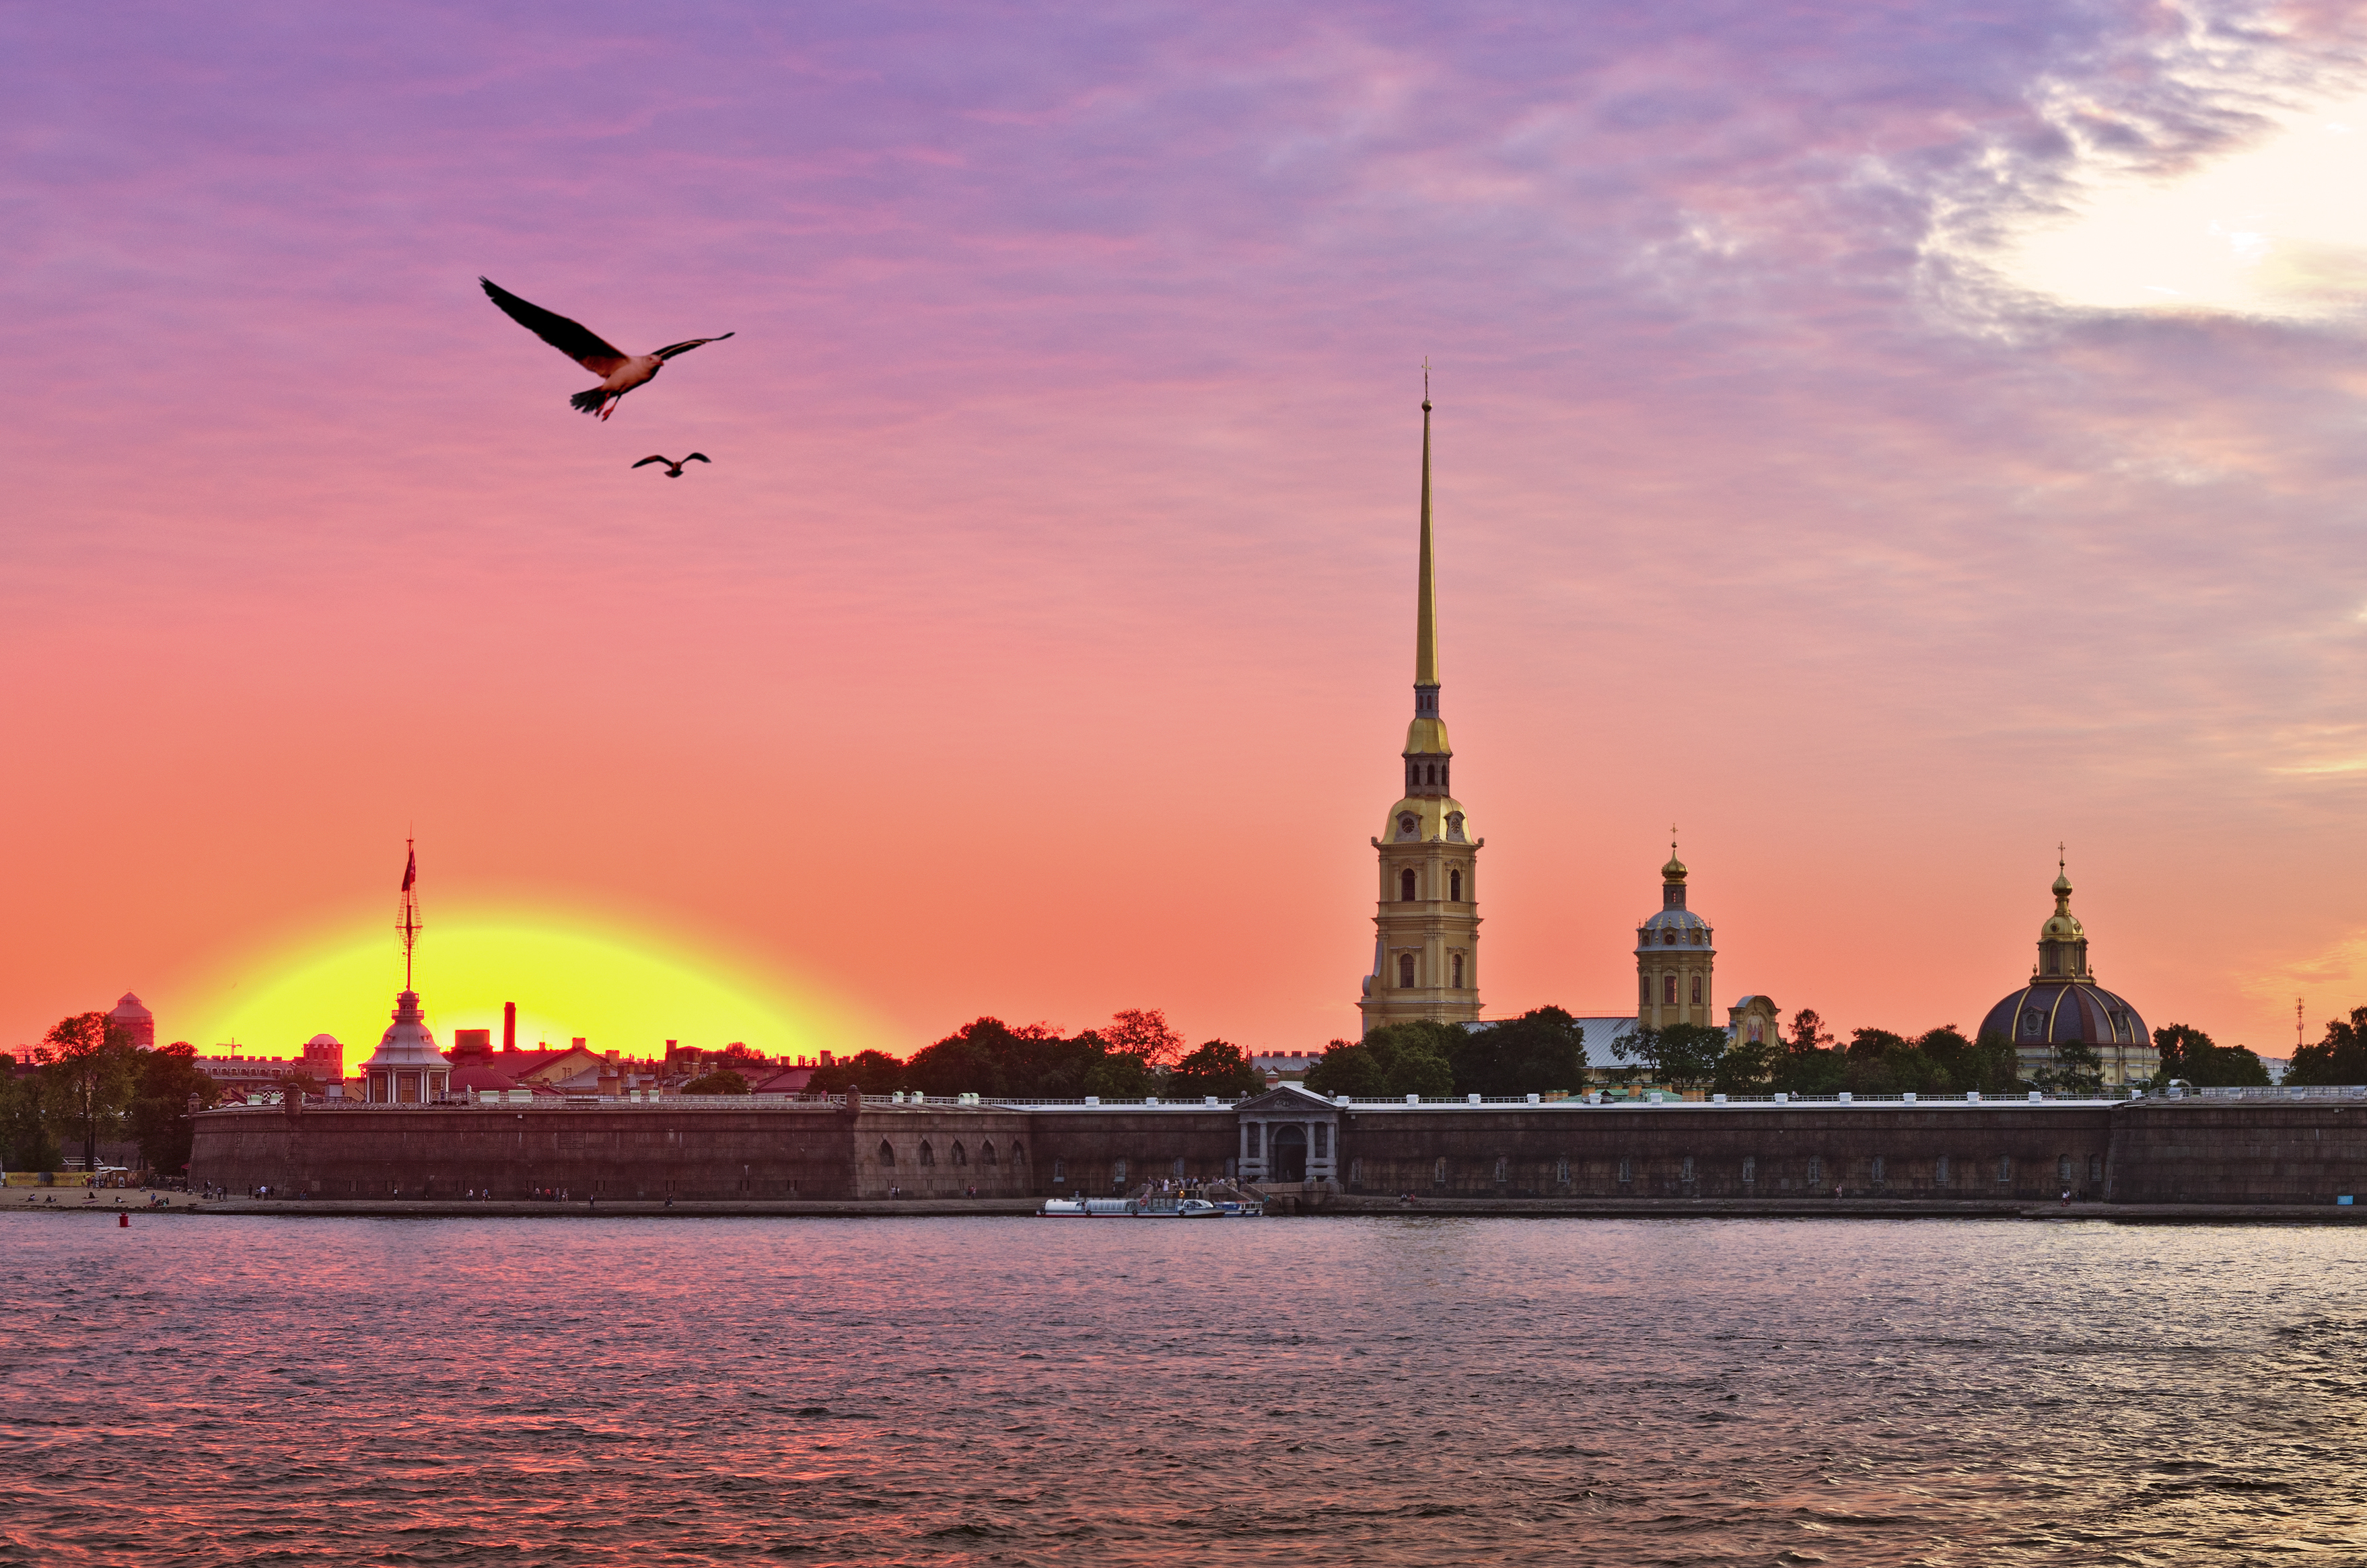 Санкт Петербург е известен още като "Венеция на Севера" заради дворцово подредените си водни пътища. Той успява да избегне нахлуването на сталинисткия архитектурен стил, а грандиозните останки от царските времена си стоят непокътнати. Изваян от островчета и от криволичещата река Нева, градът е перспектива с геометрична елегантност.